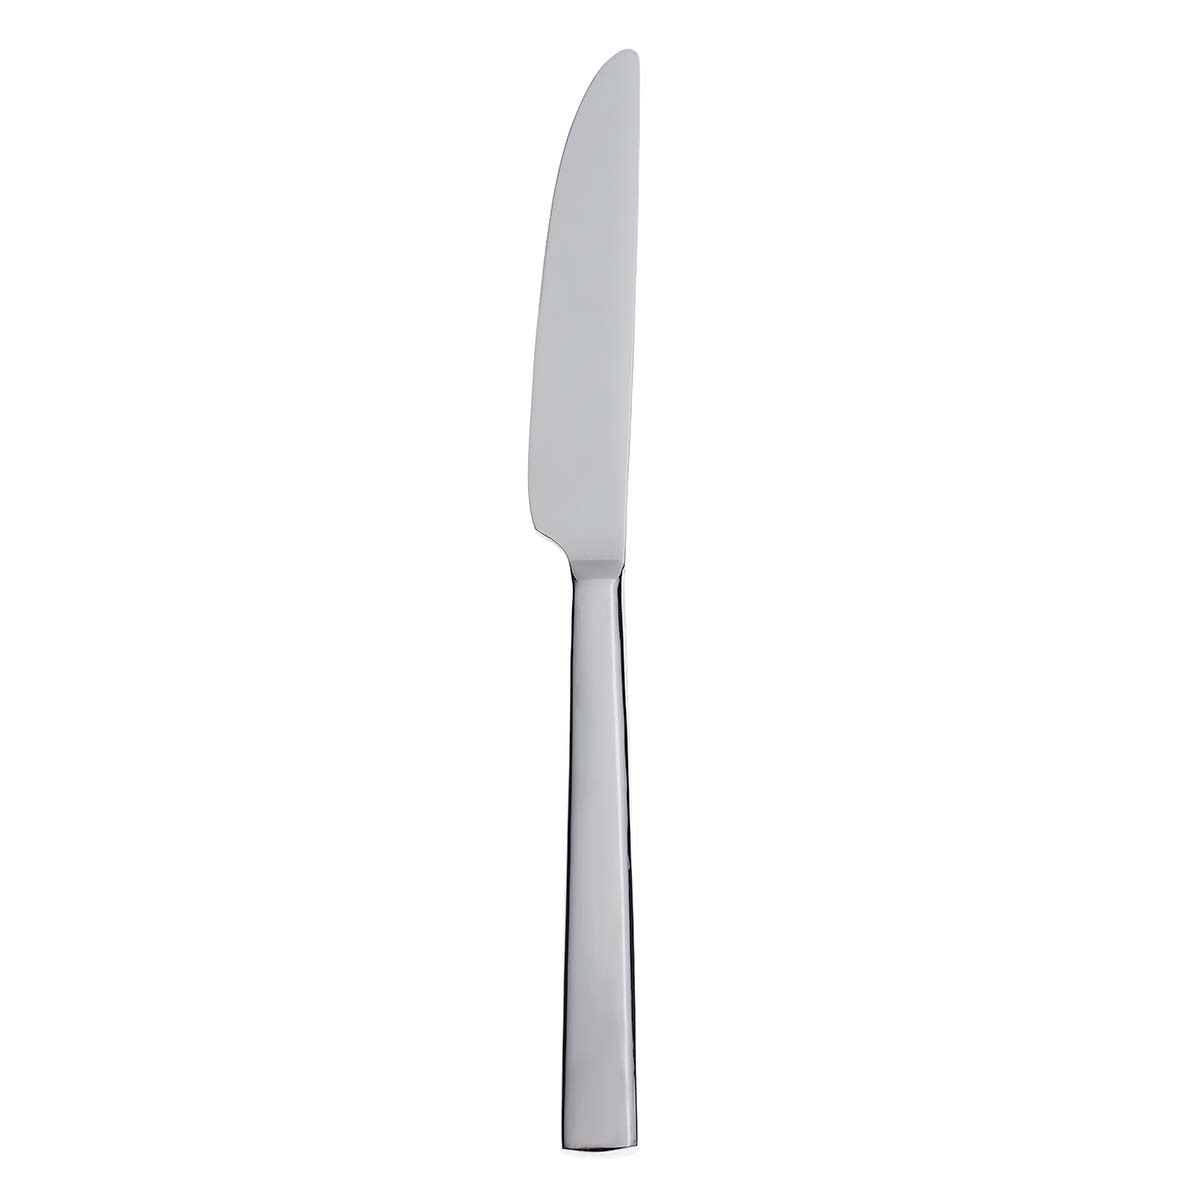 Dinner Knives - Table Knives